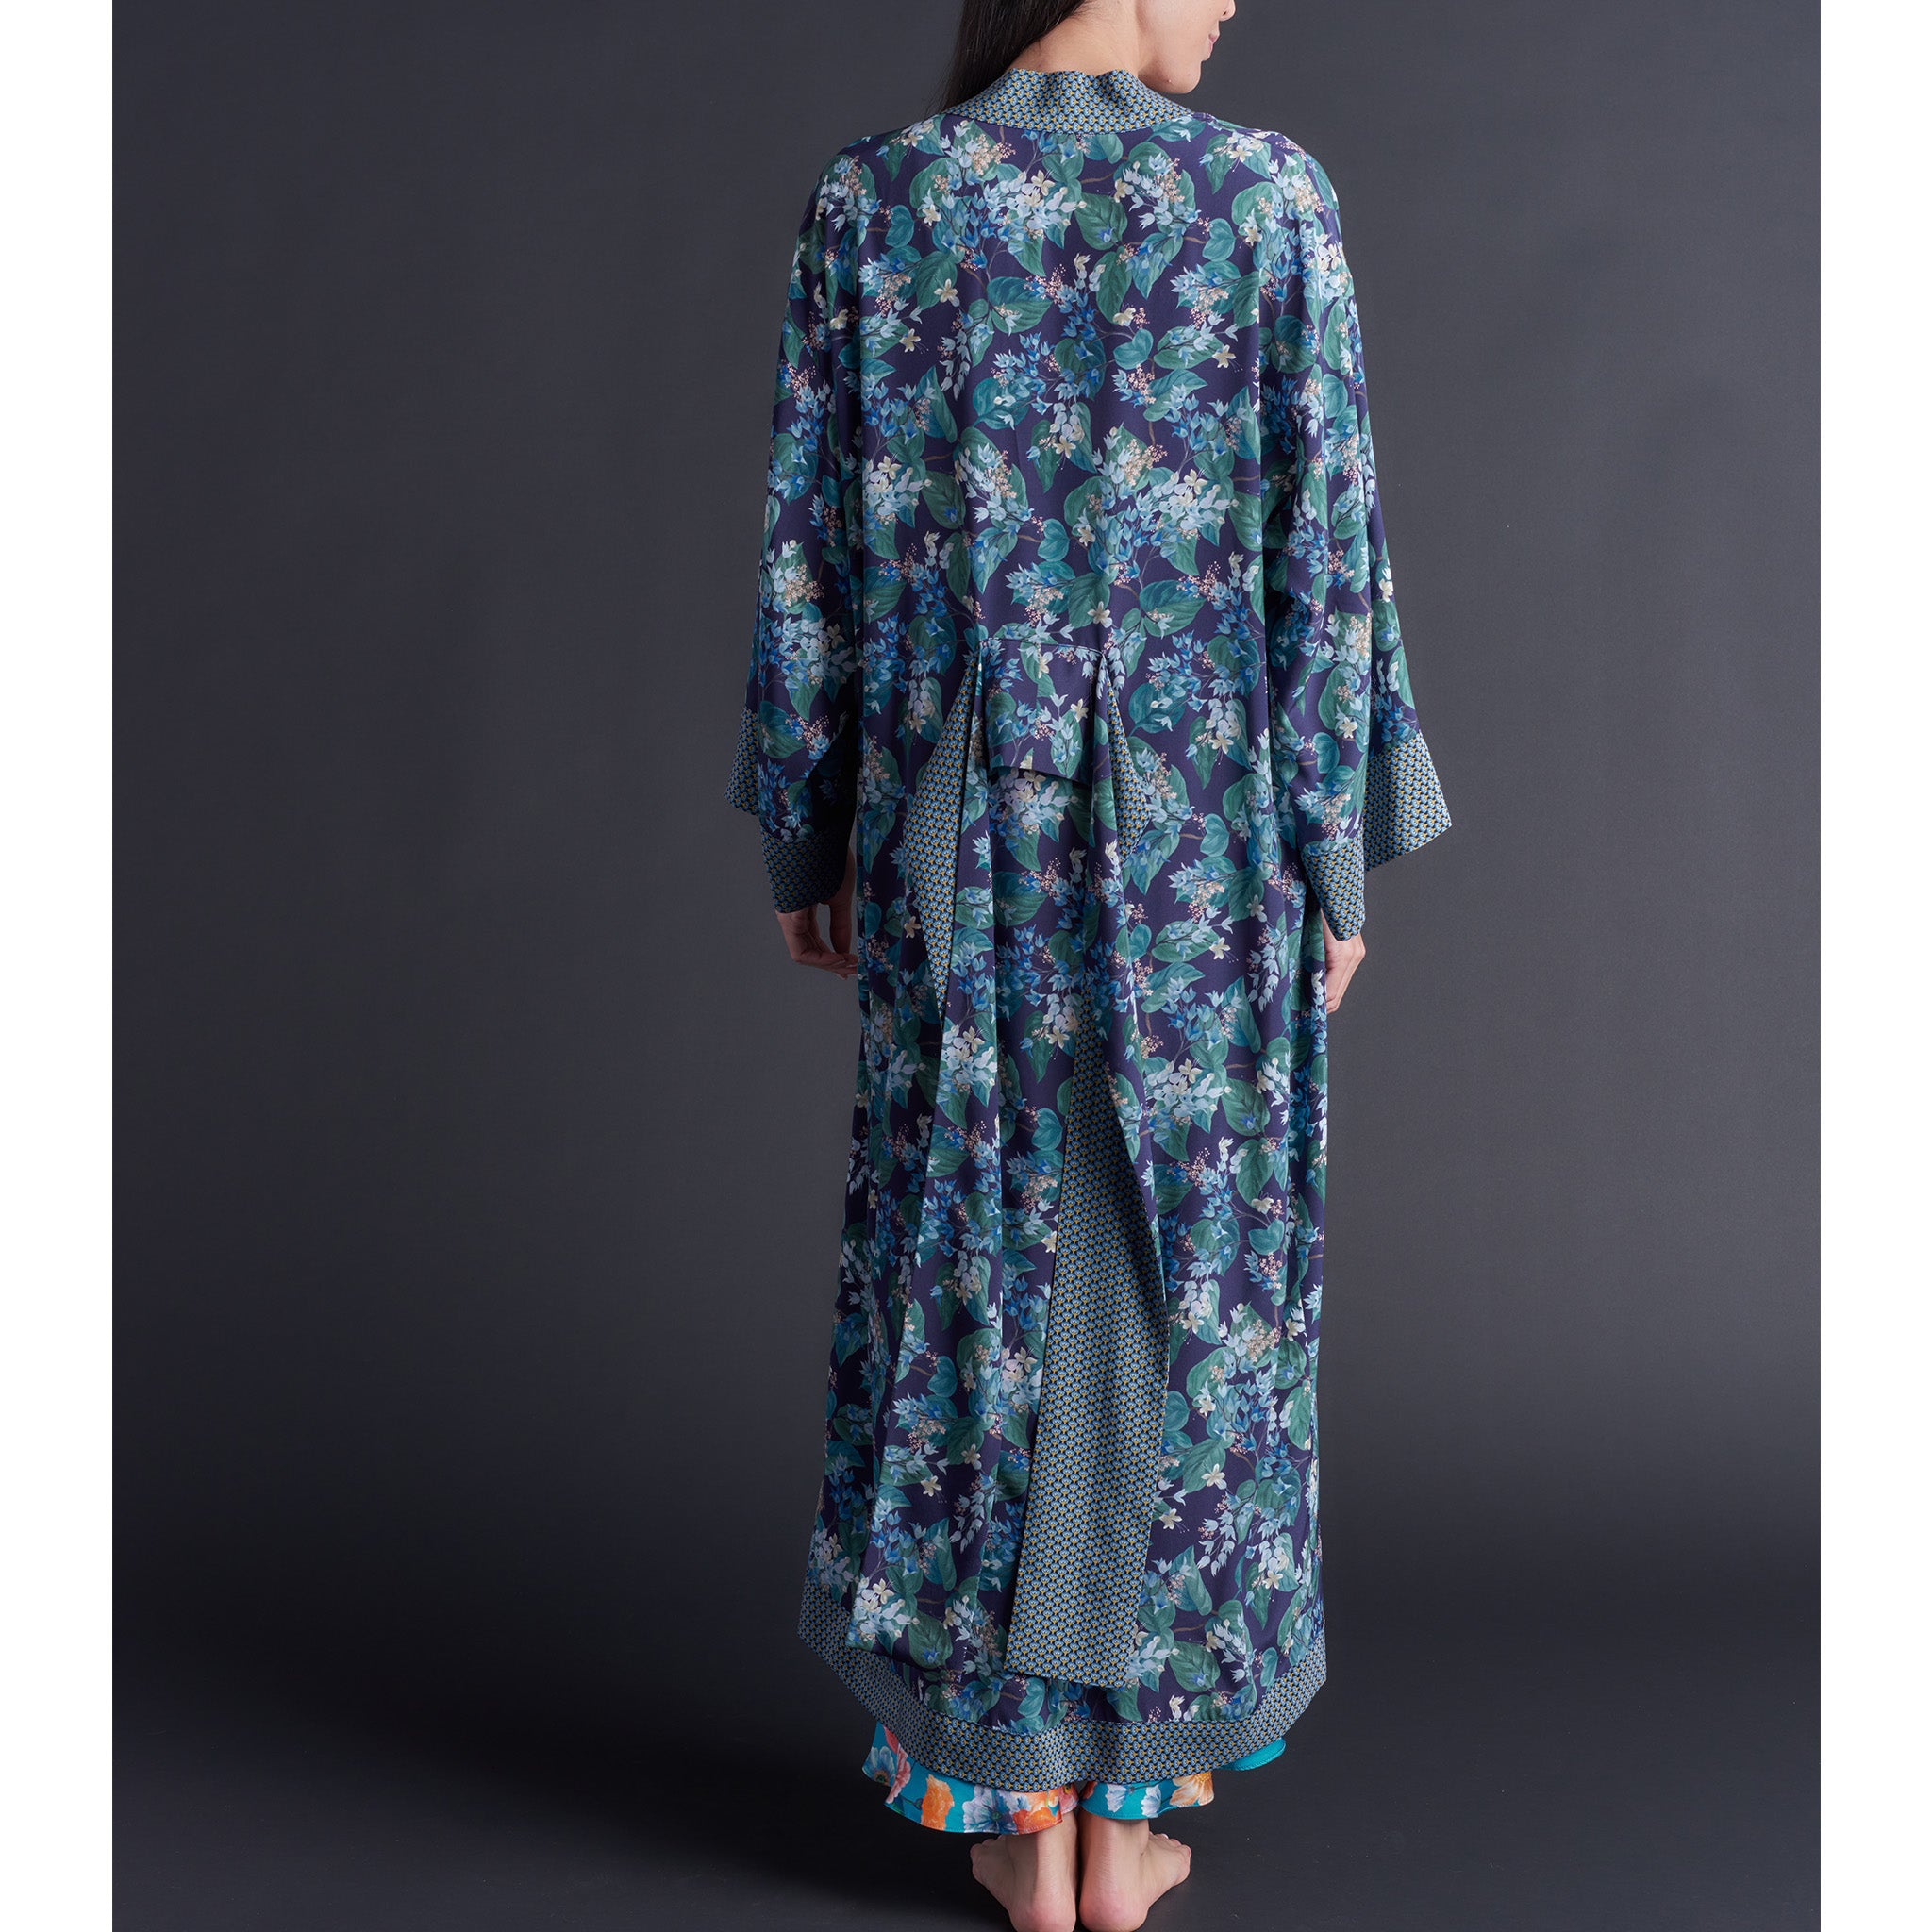 Asteria Kimono Robe in Osterley Liberty of London Print Silk Crepe De Chine